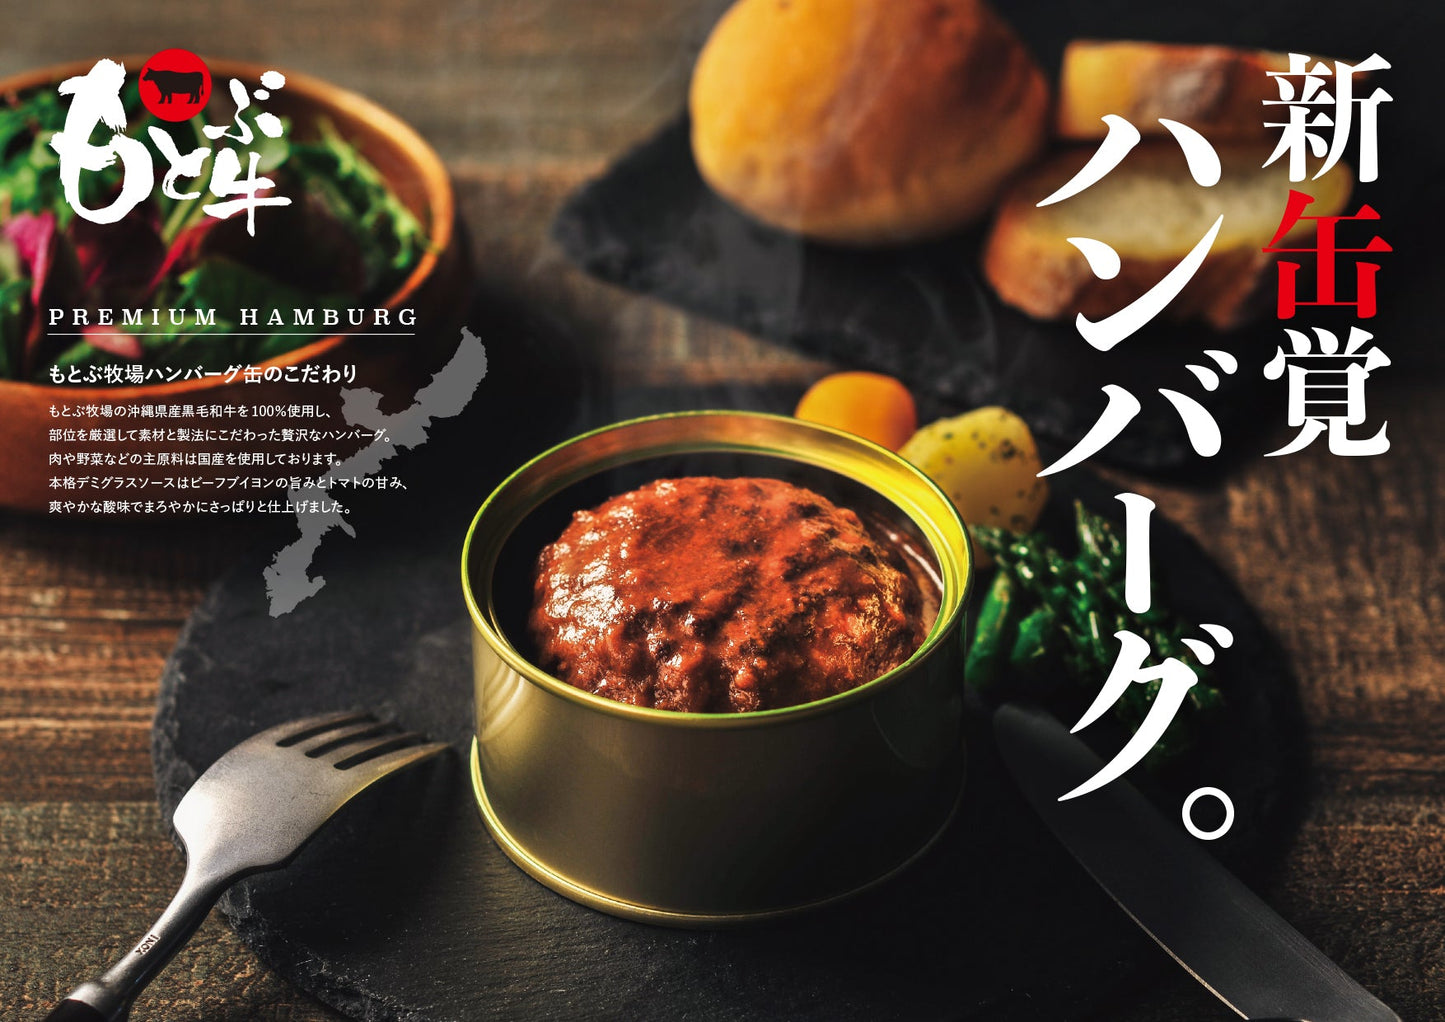 【Gift】Motobu Ranch Hamburger Can PREMIUM Gift (160g×6)|May Limited Sale Item